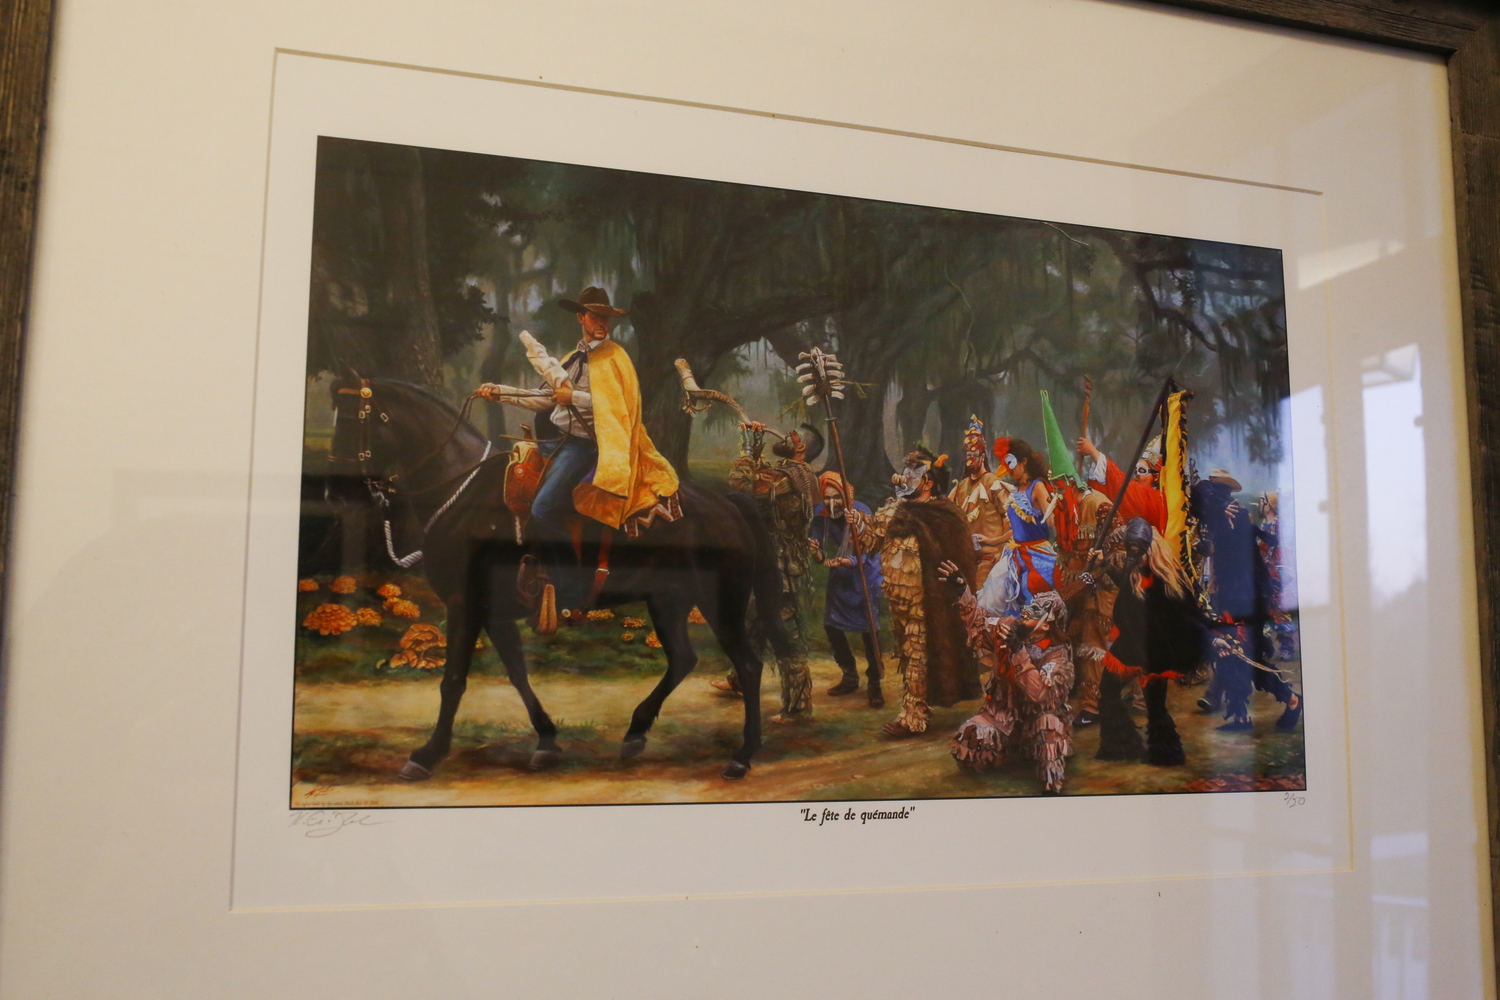 Une peinture de la Fête de quémande, ou « Courir de Mardi gras », une tradition cajun pour Mardi gras où Jourdan est capitaine © Globe Reporters